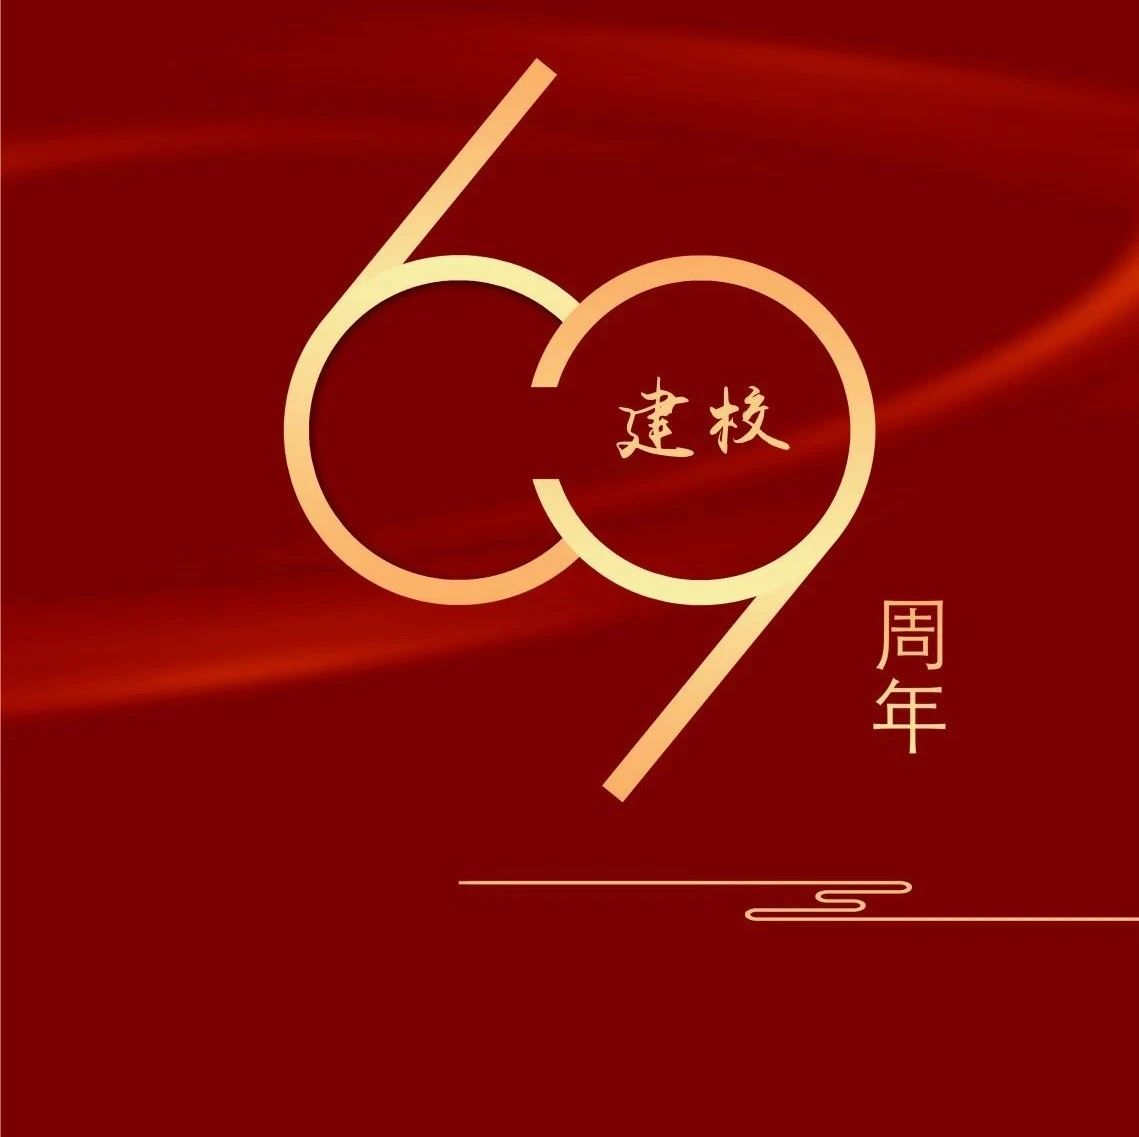 借你双眸读法大 |“ 寻迹：历史影像中的法大”中国政法大学69周年校庆摄影展开展